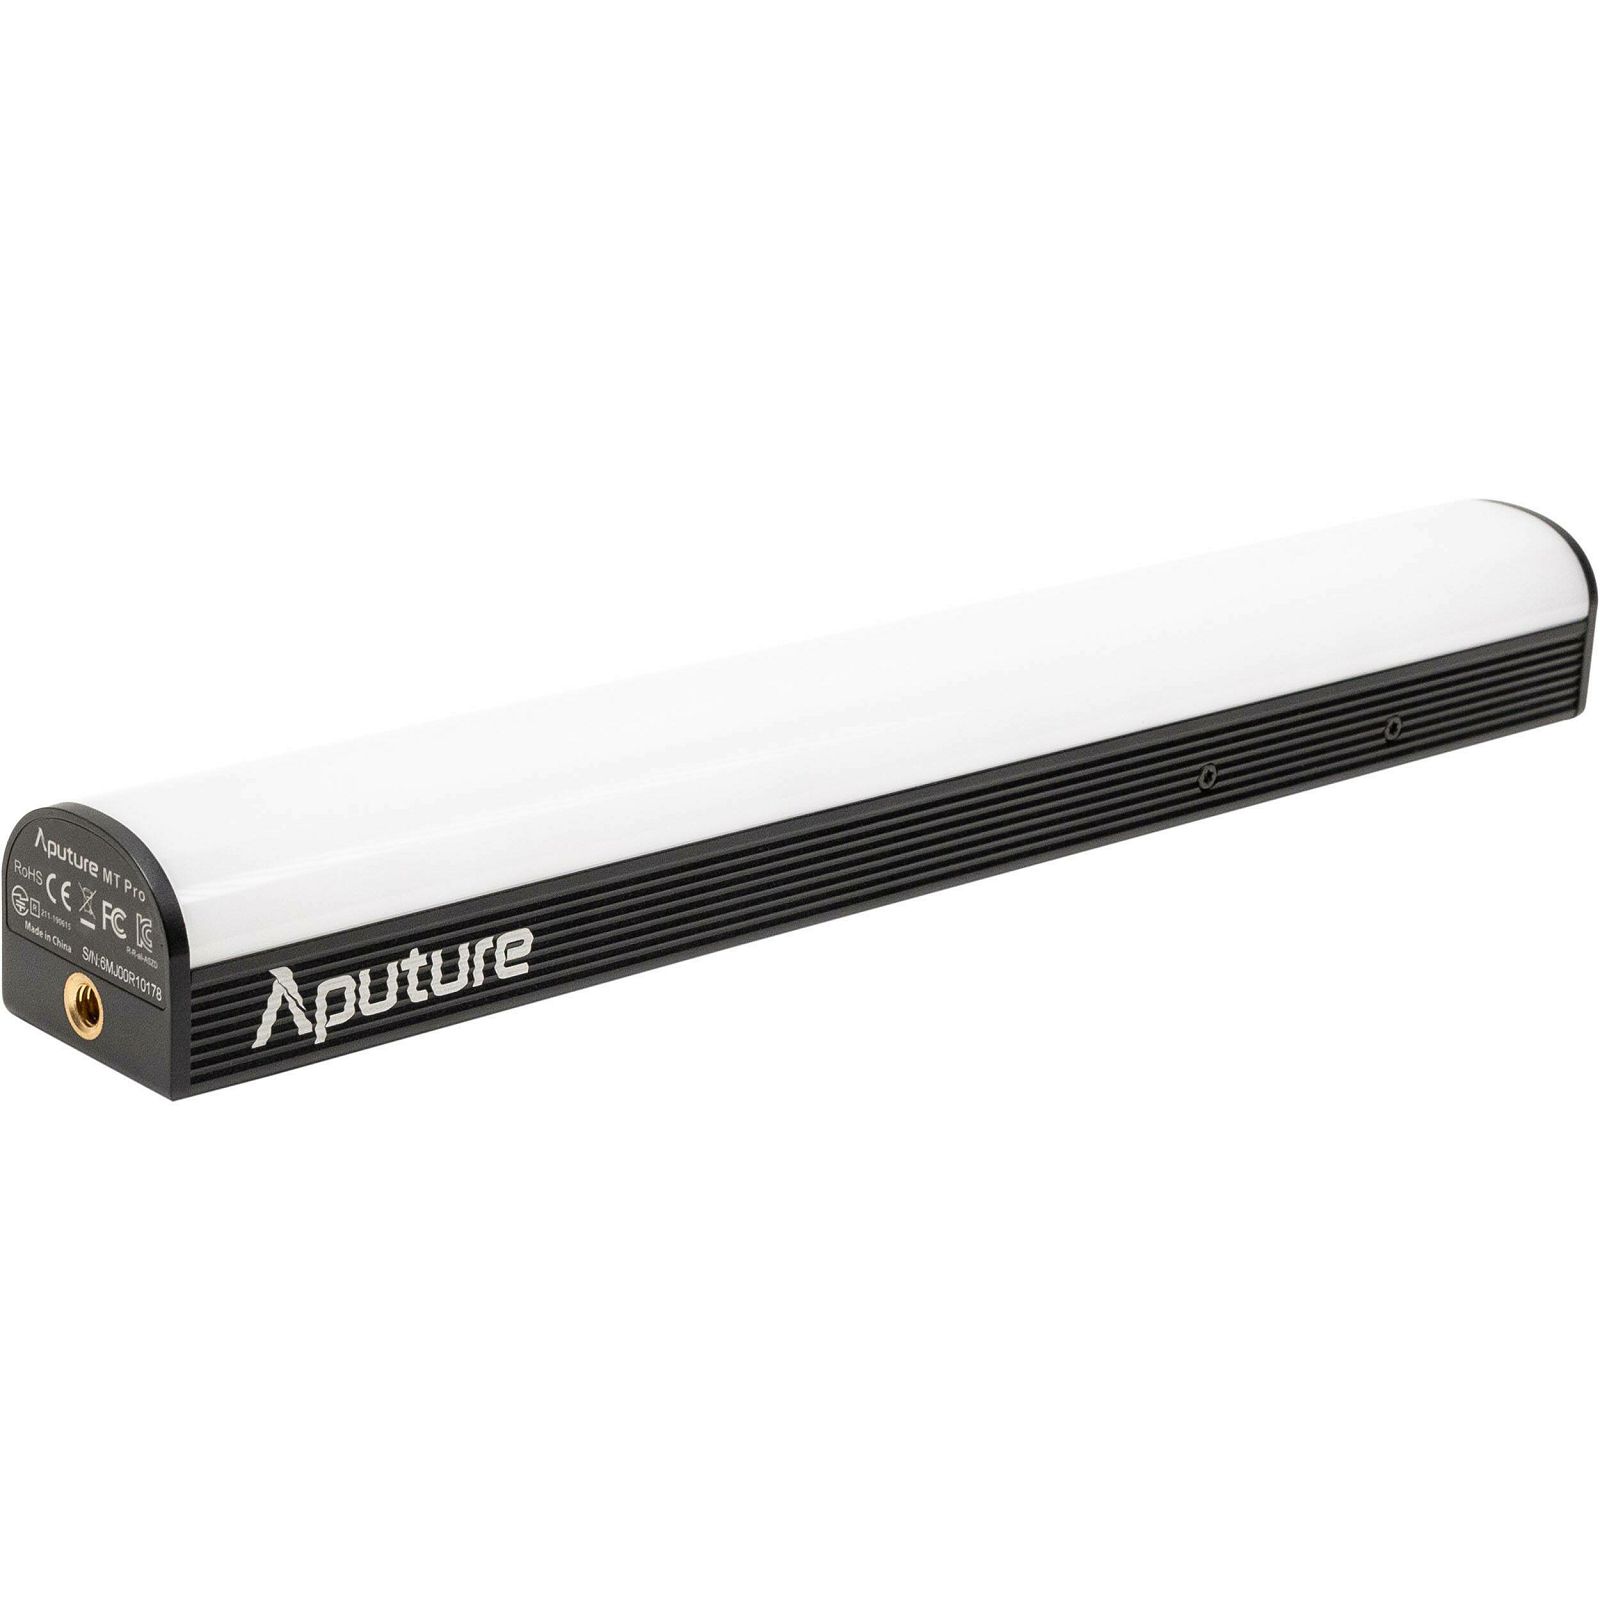 Aputure MT Pro RGB Tube LED Light